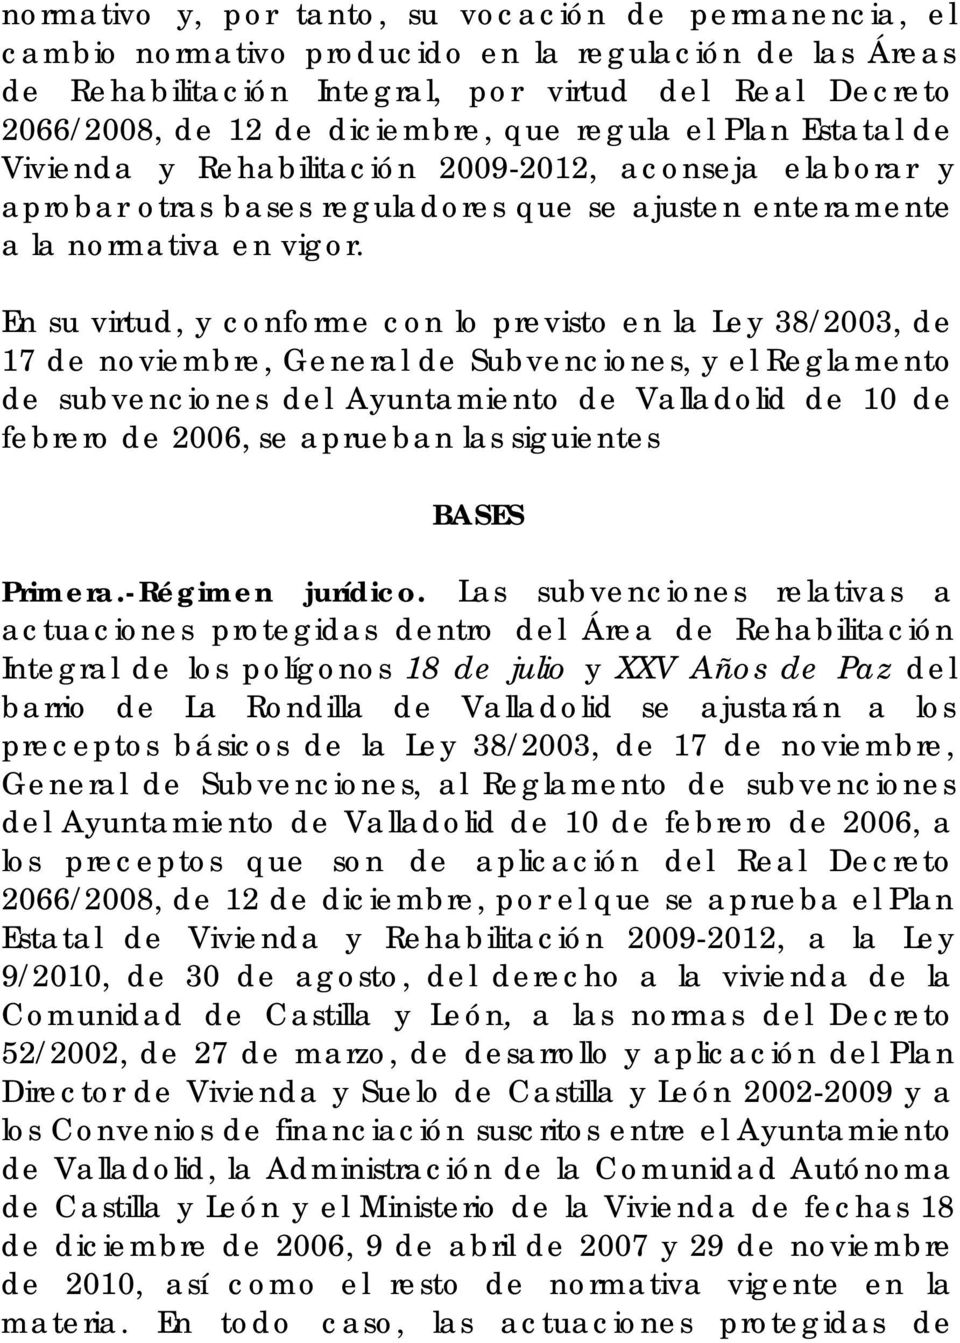 En su virtud, y conforme con lo previsto en la Ley 38/2003, de 17 de noviembre, General de Subvenciones, y el Reglamento de subvenciones del Ayuntamiento de Valladolid de 10 de febrero de 2006, se